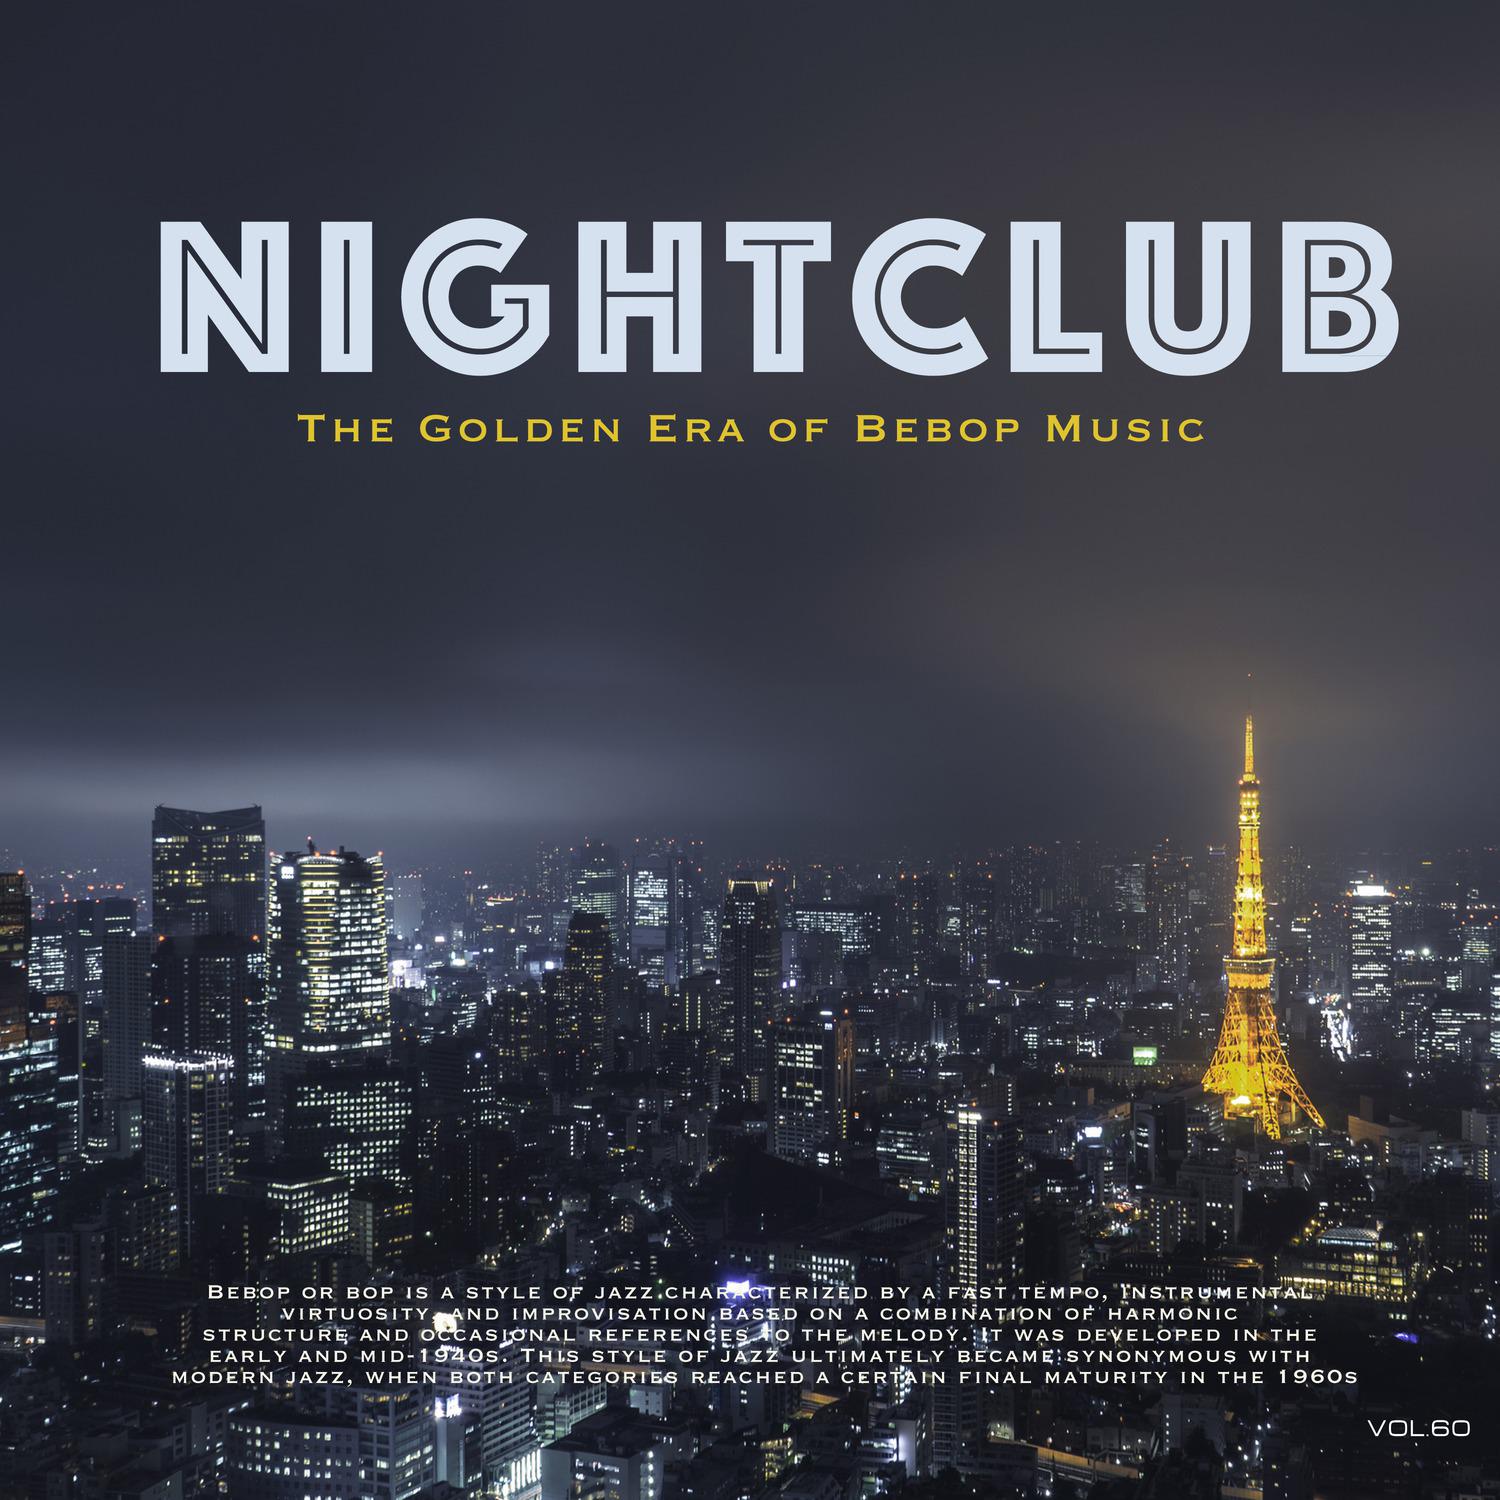 Nightclub, Vol. 60 (The Golden Era of Bebop Music)